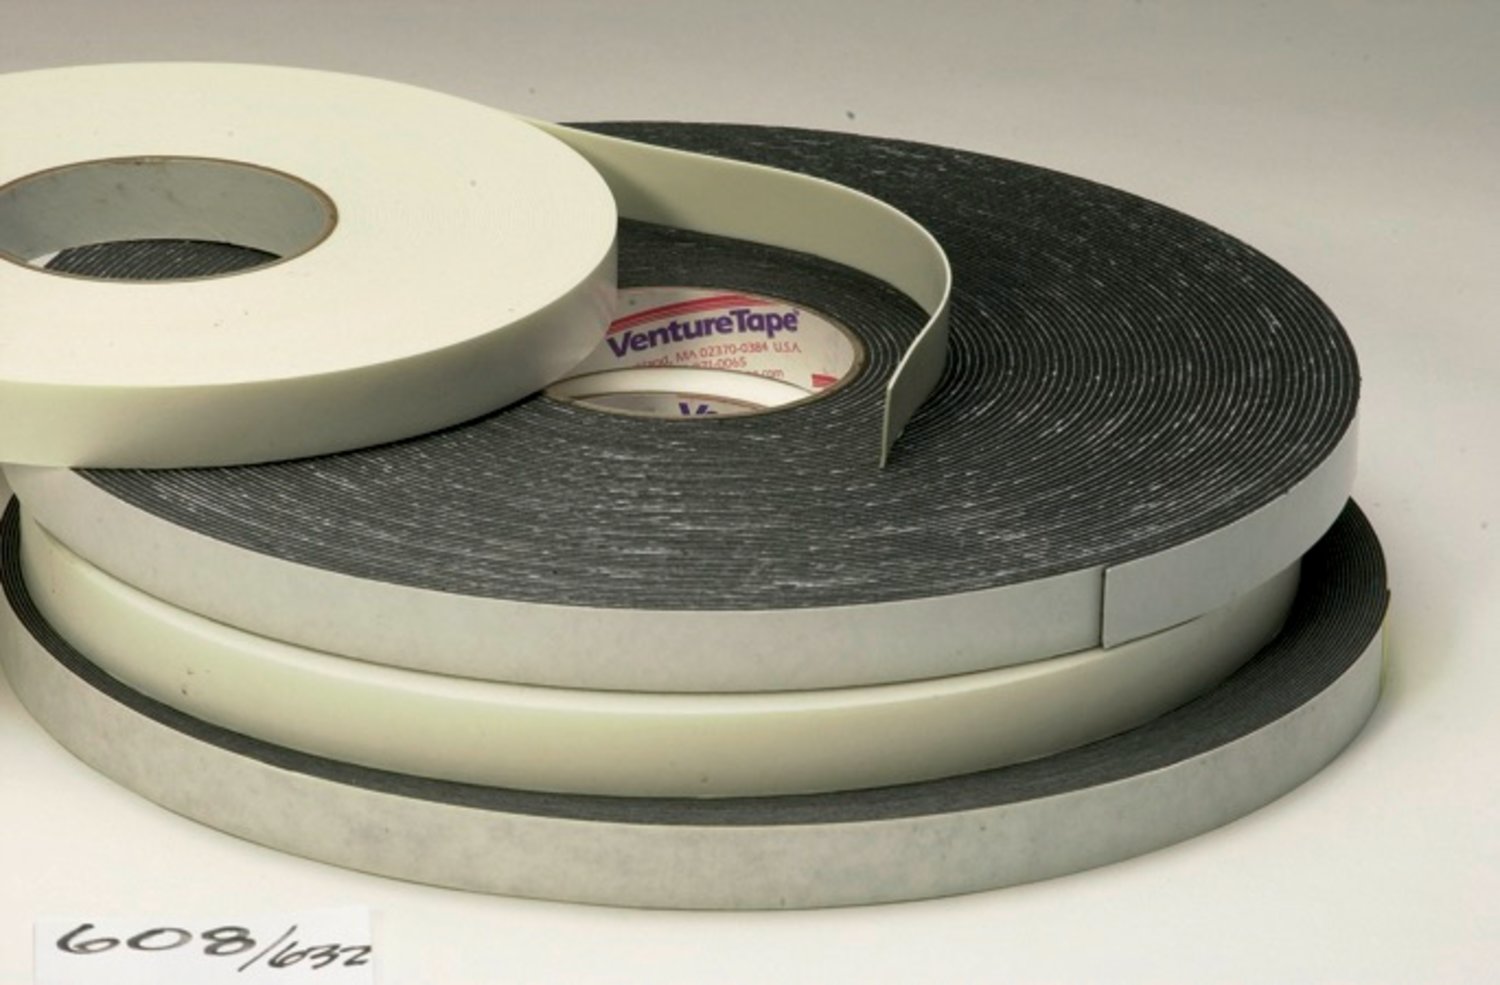 7100043808 - 3M Venture Tape Double Sided Polyethylene Foam Glazing Tape VG1216,
Black, 1/4 in x 150 ft, 62 mil, 78 rolls per case